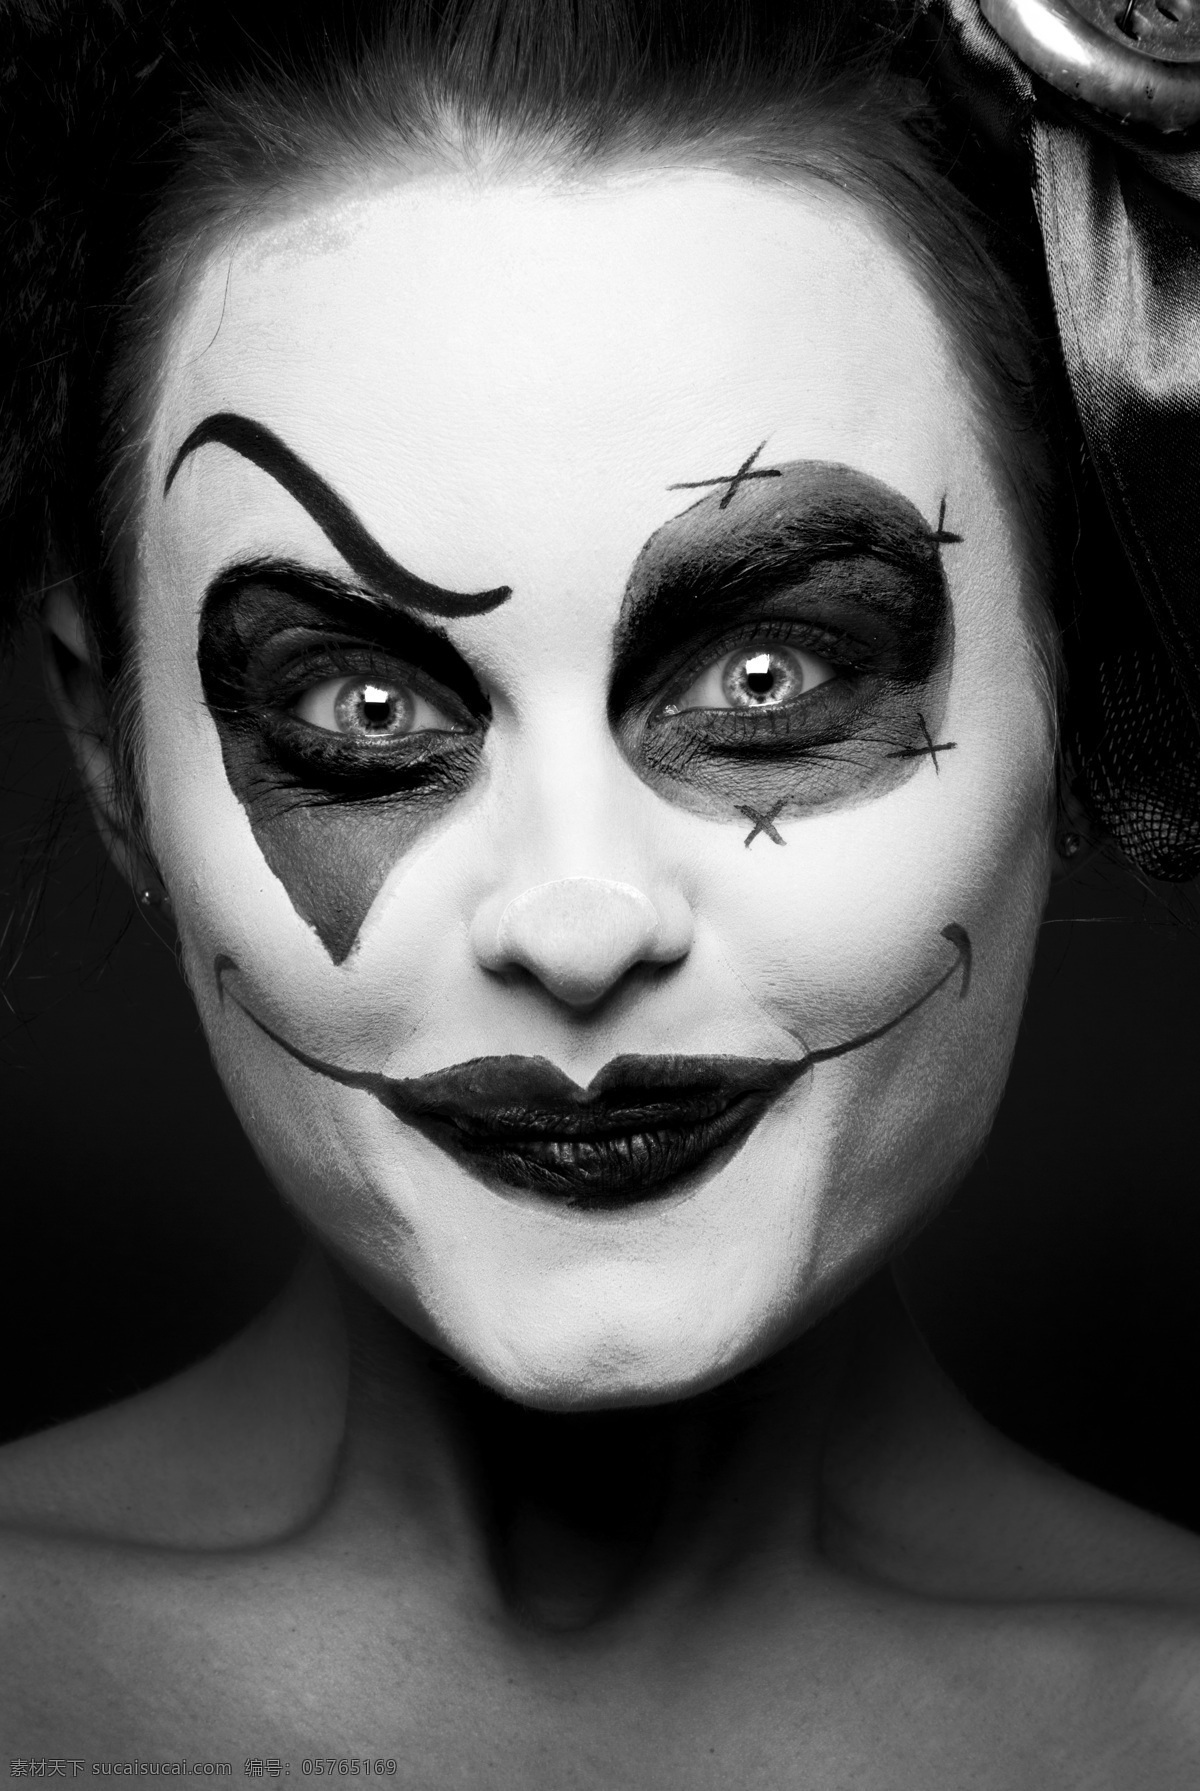 滑稽 小丑 人物 素材图片 人物摄影 人物素材 人物背景 化妆 生活人物 人物图片